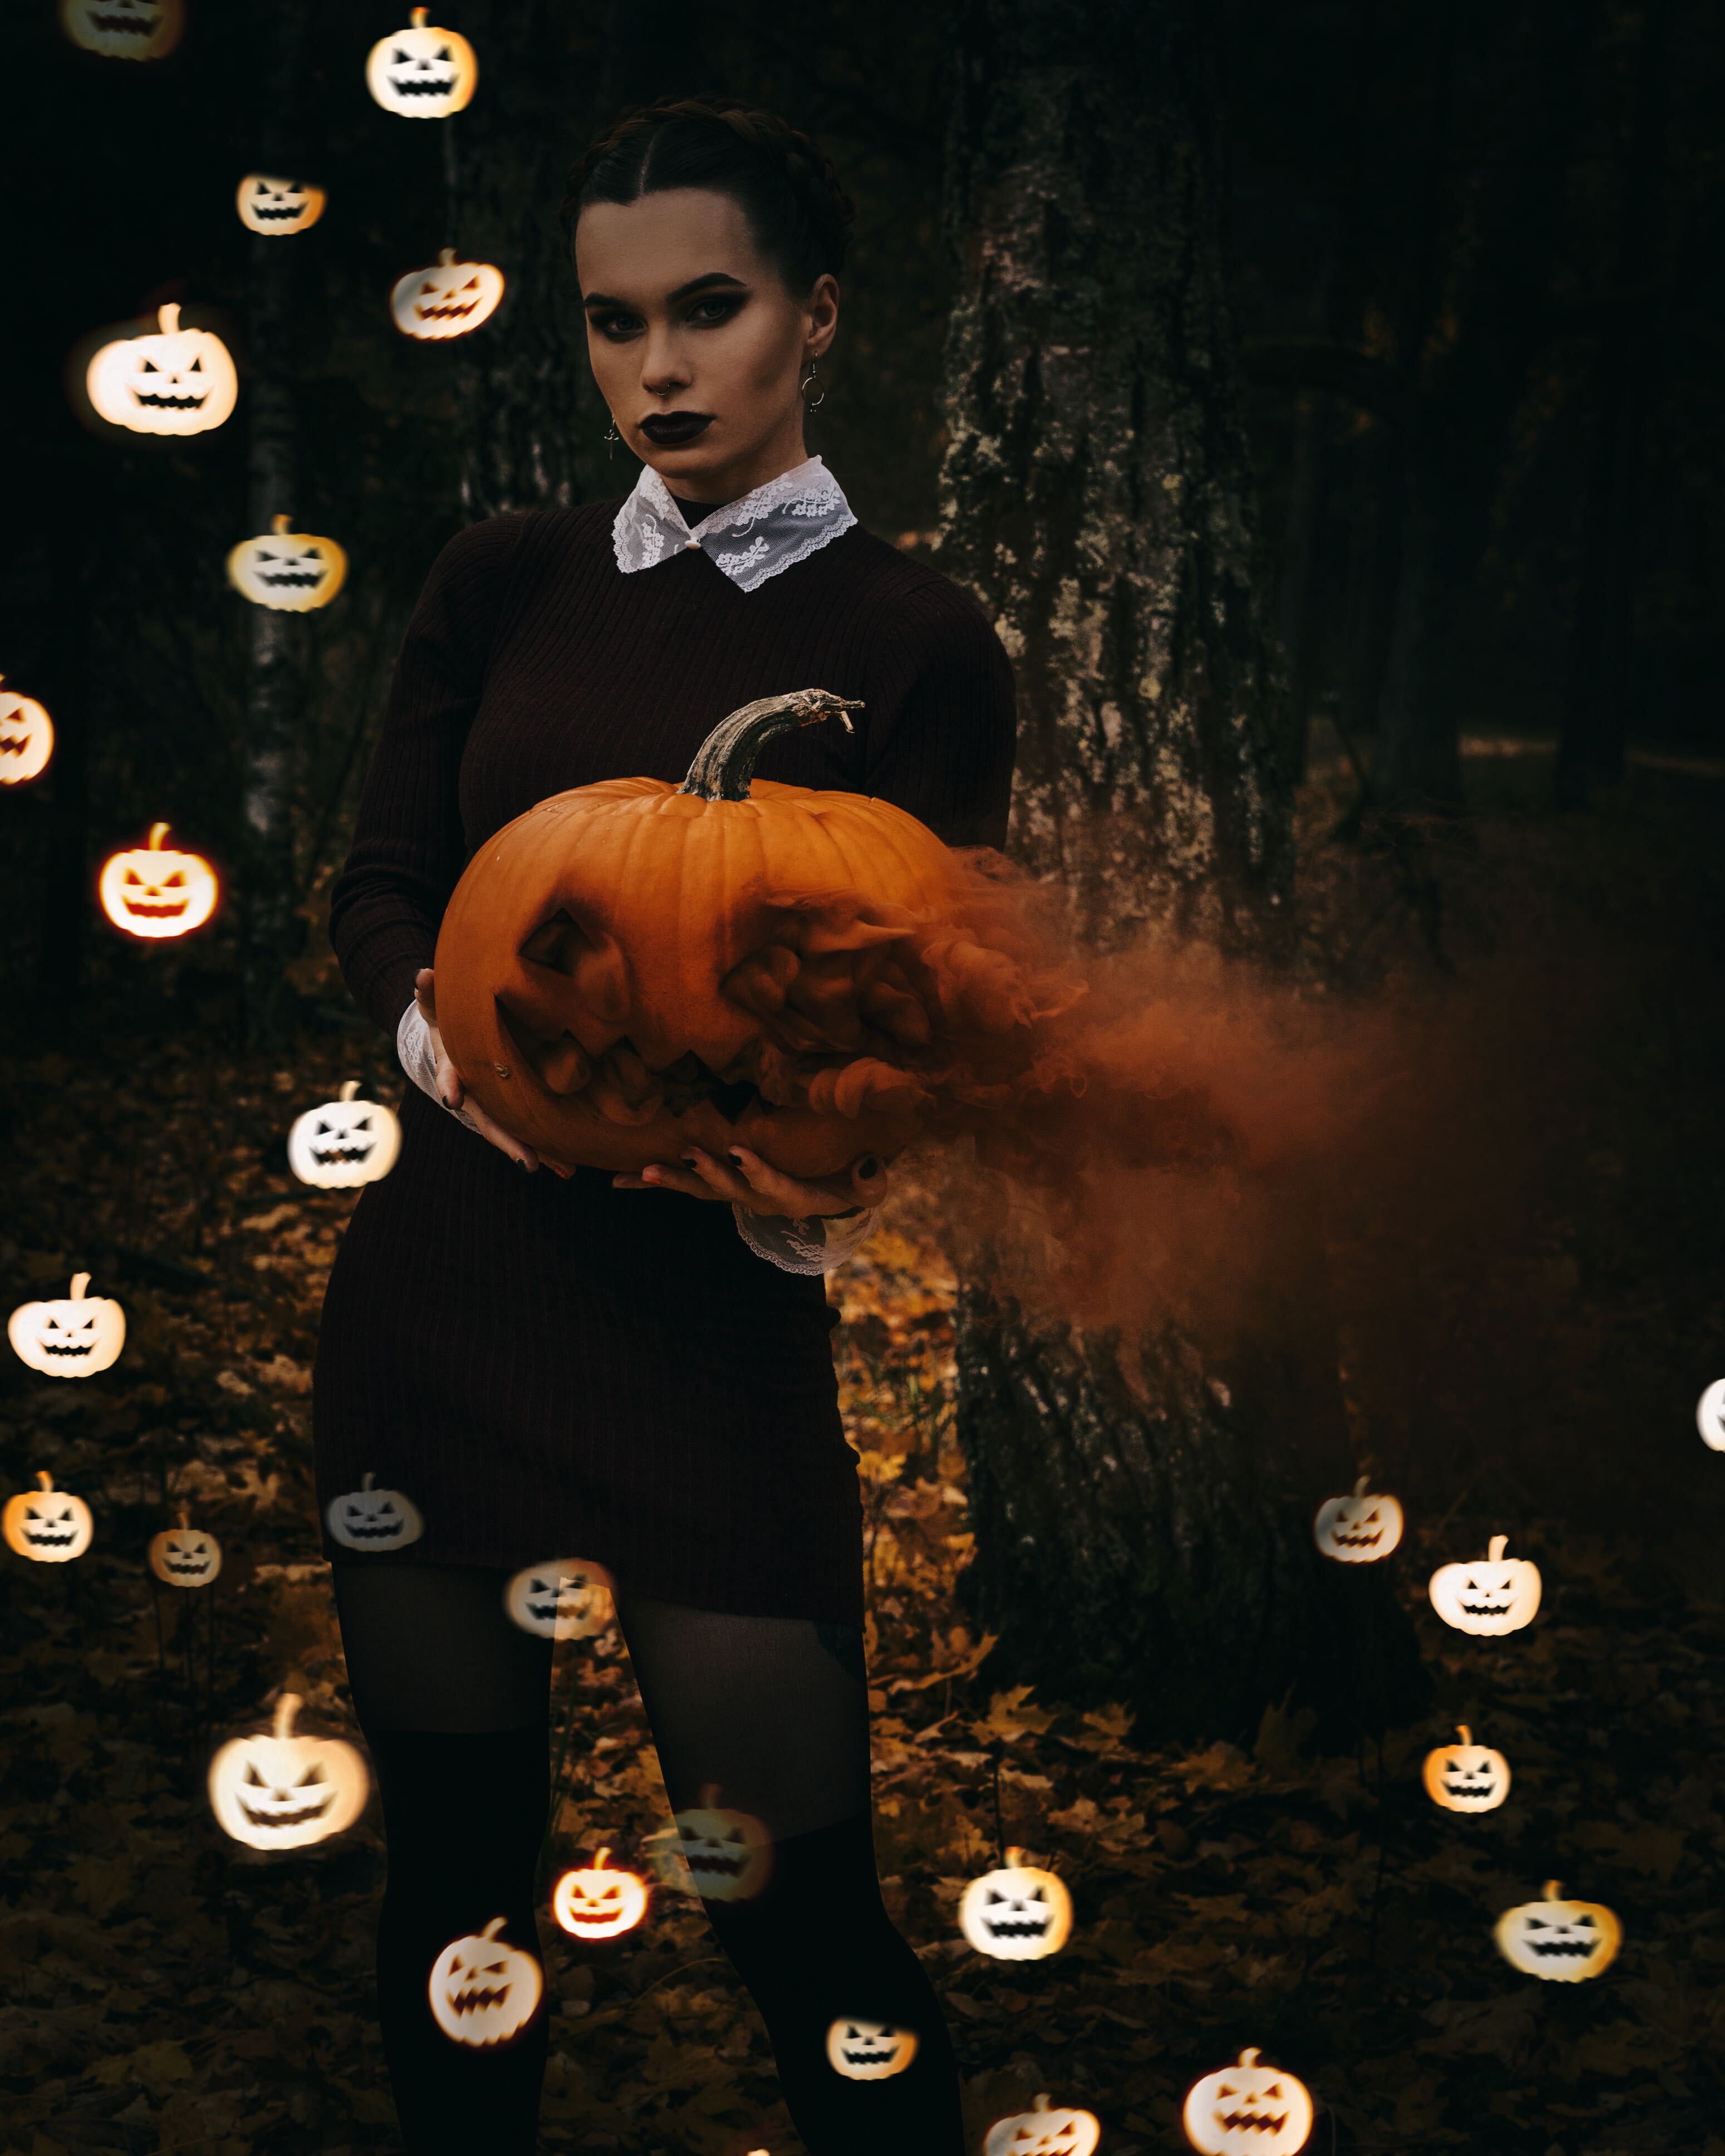 Halloween edit with pumpkins 